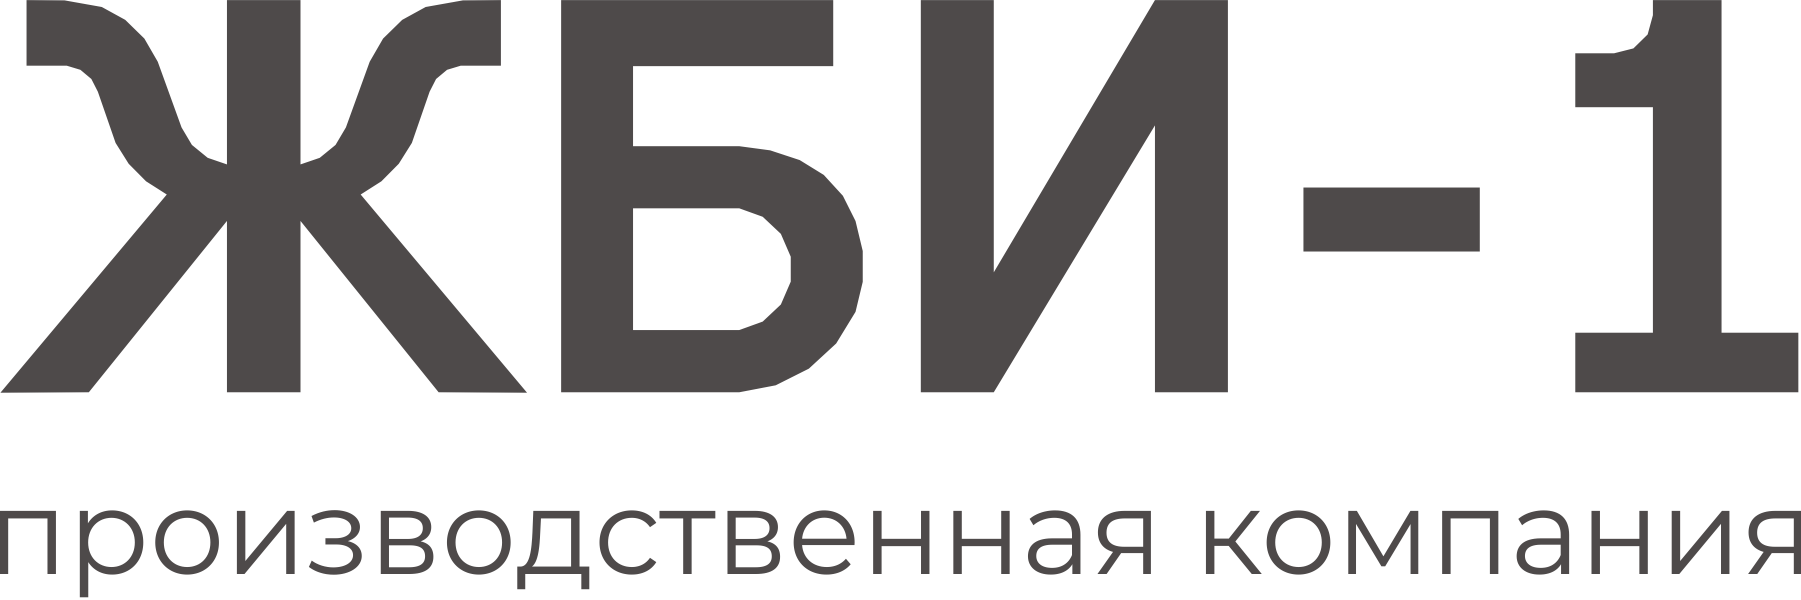 Строительная компания «ЖБИ-1»